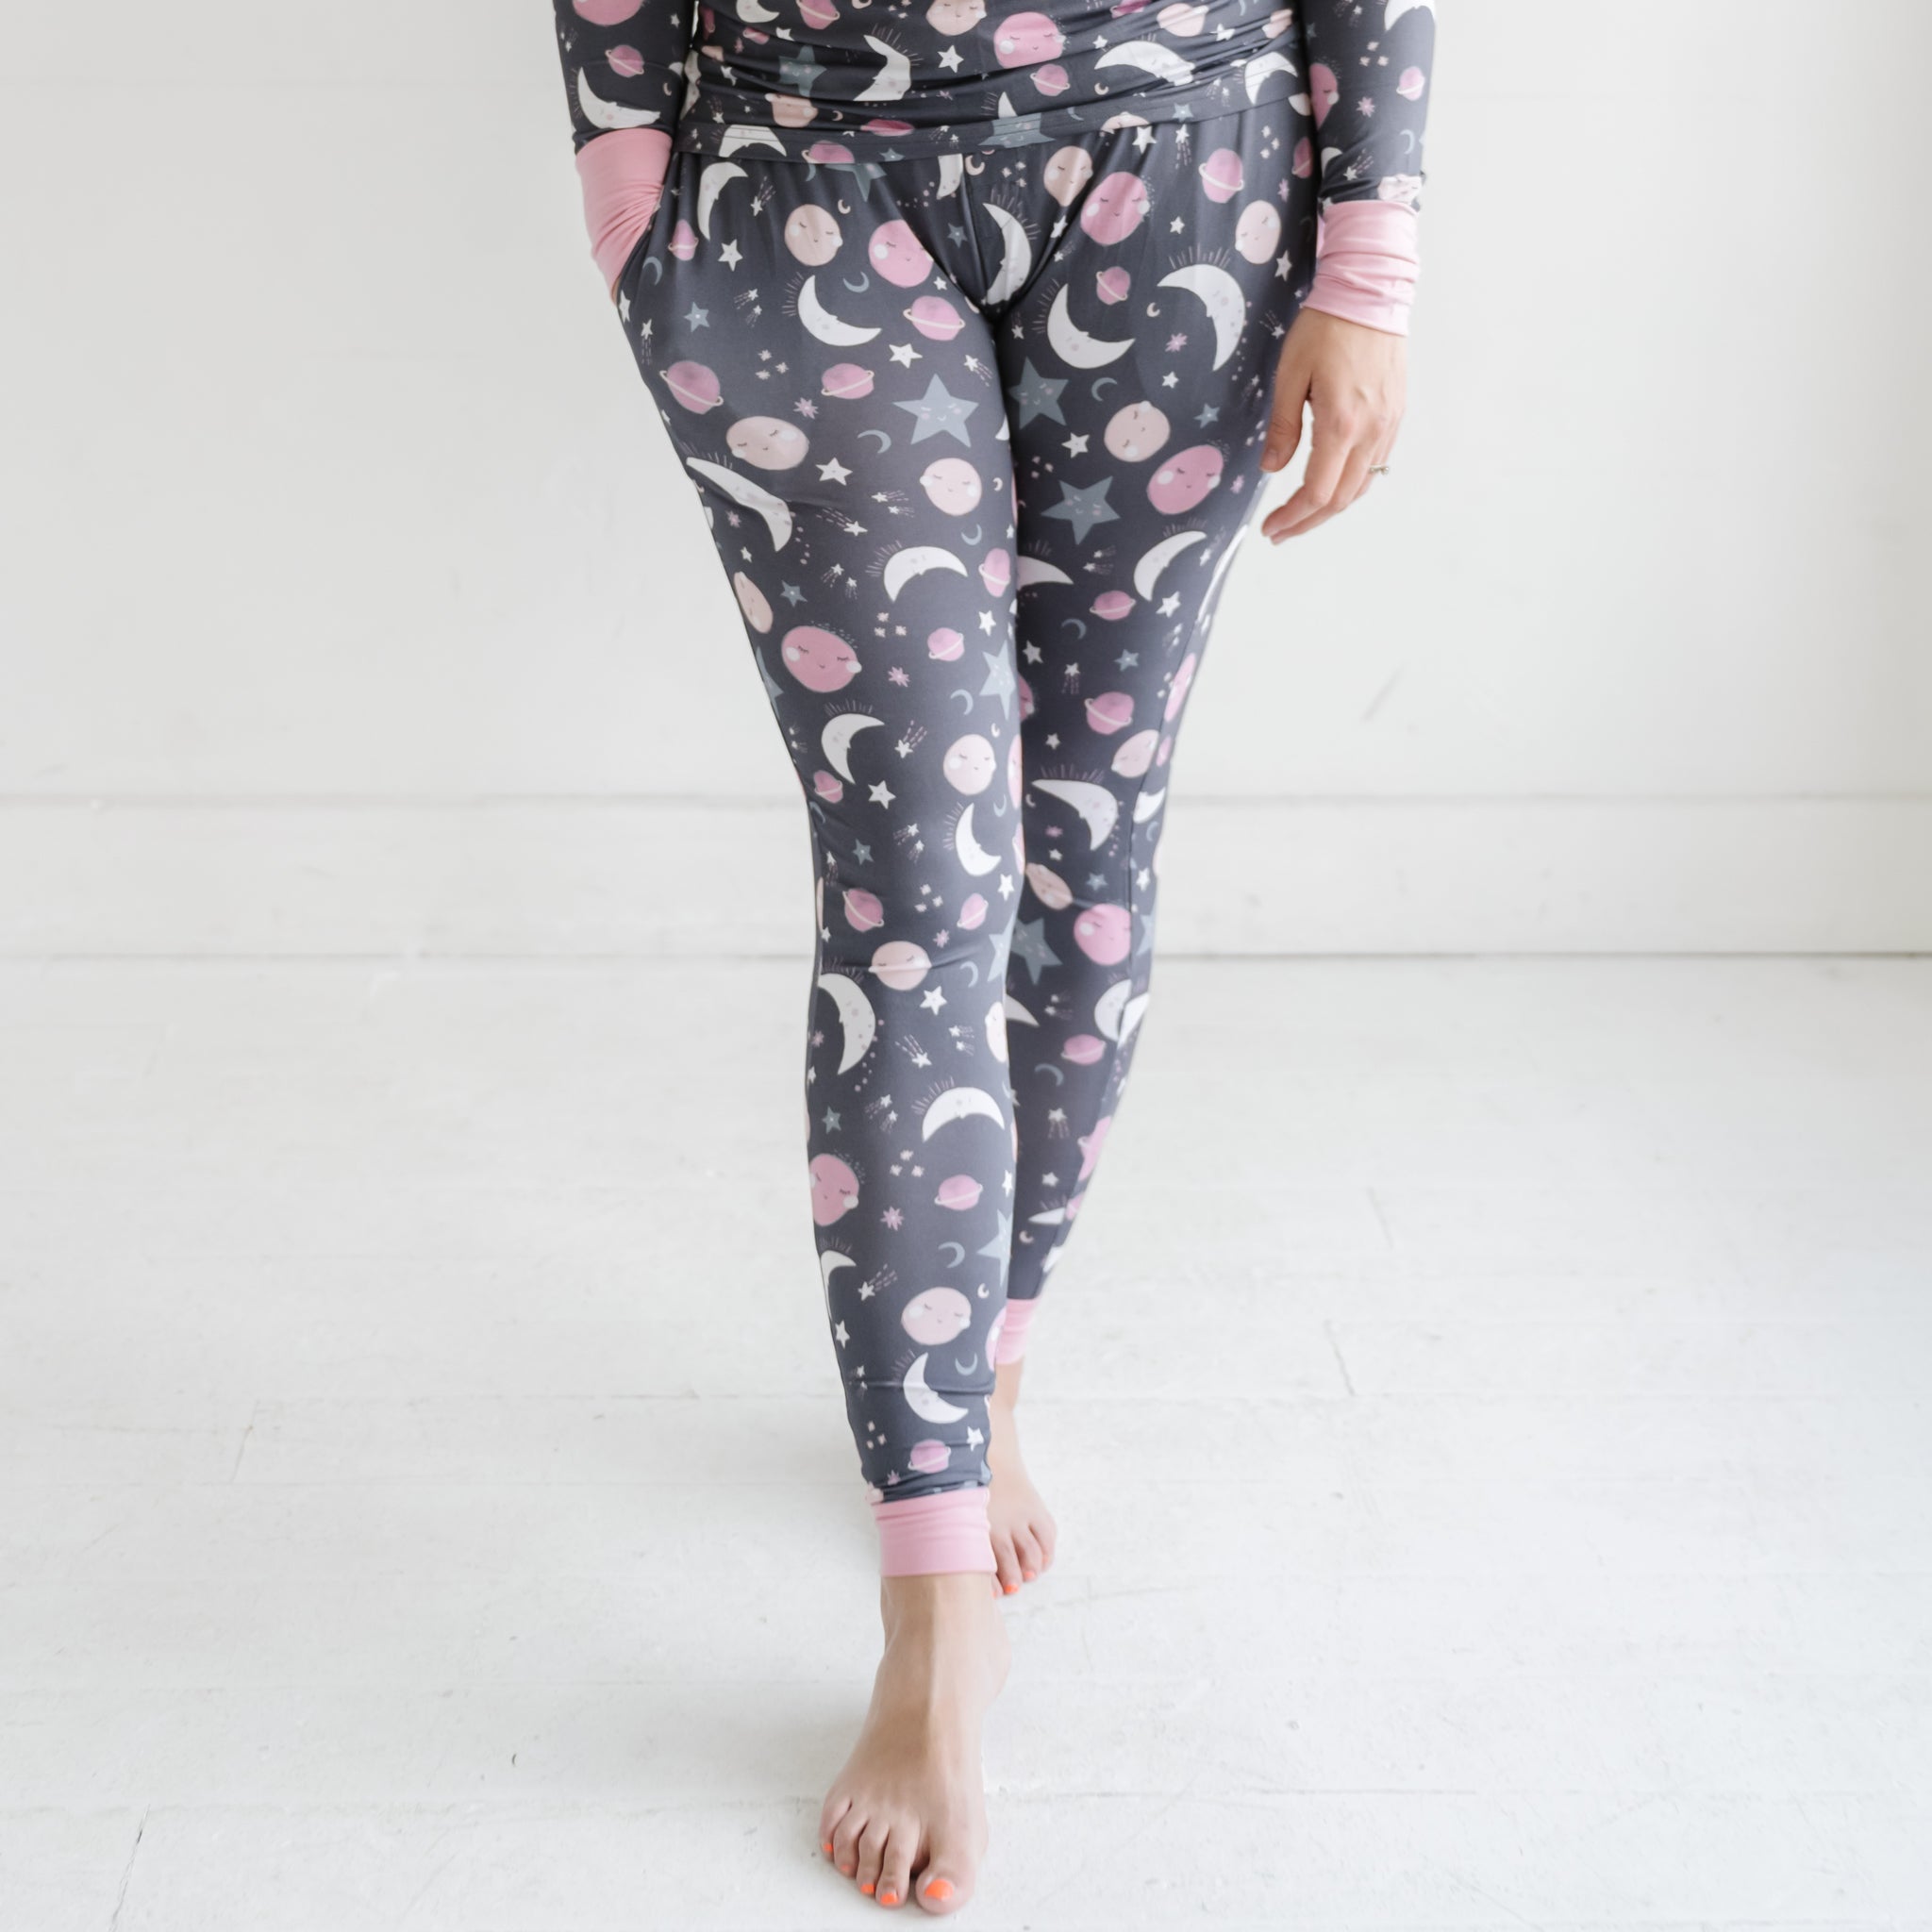 Hey Boo Women's Pajama Pants - Little Sleepies